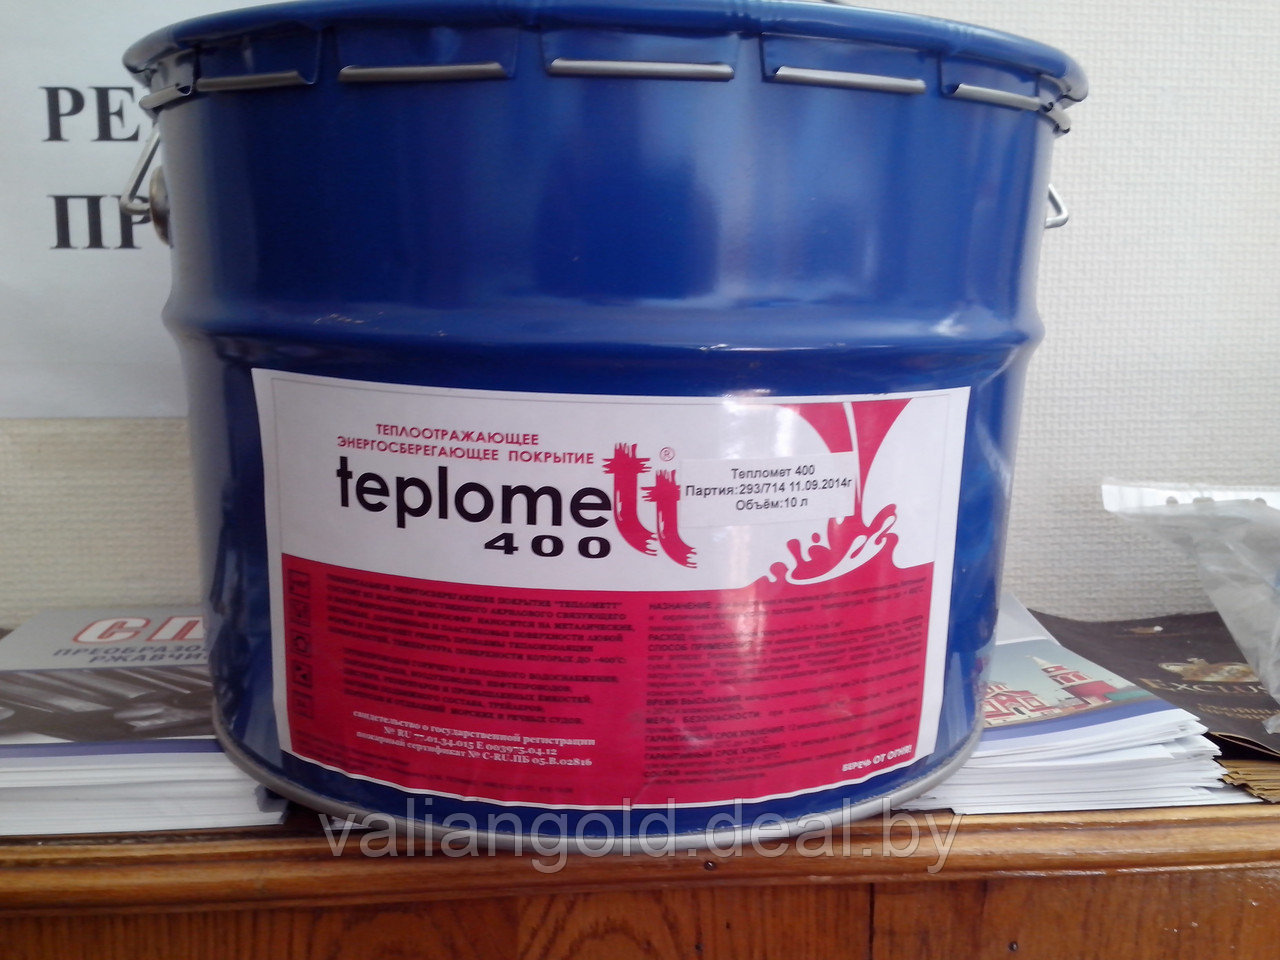 Жидкая теплоизоляция Teplomett 400 (высокотемпературная)